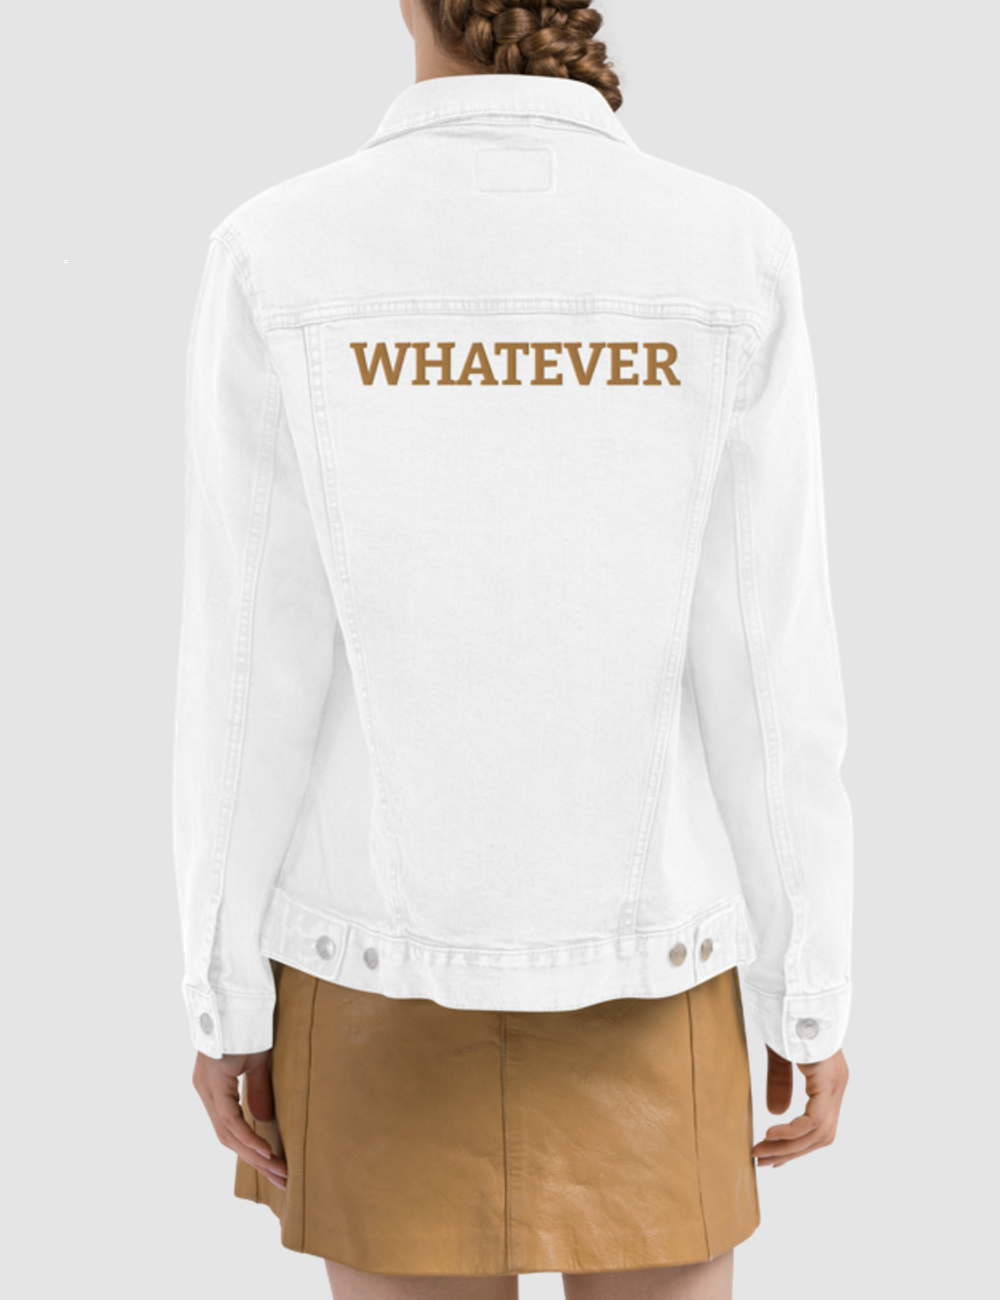 Whatever | Women's Denim Jacket OniTakai